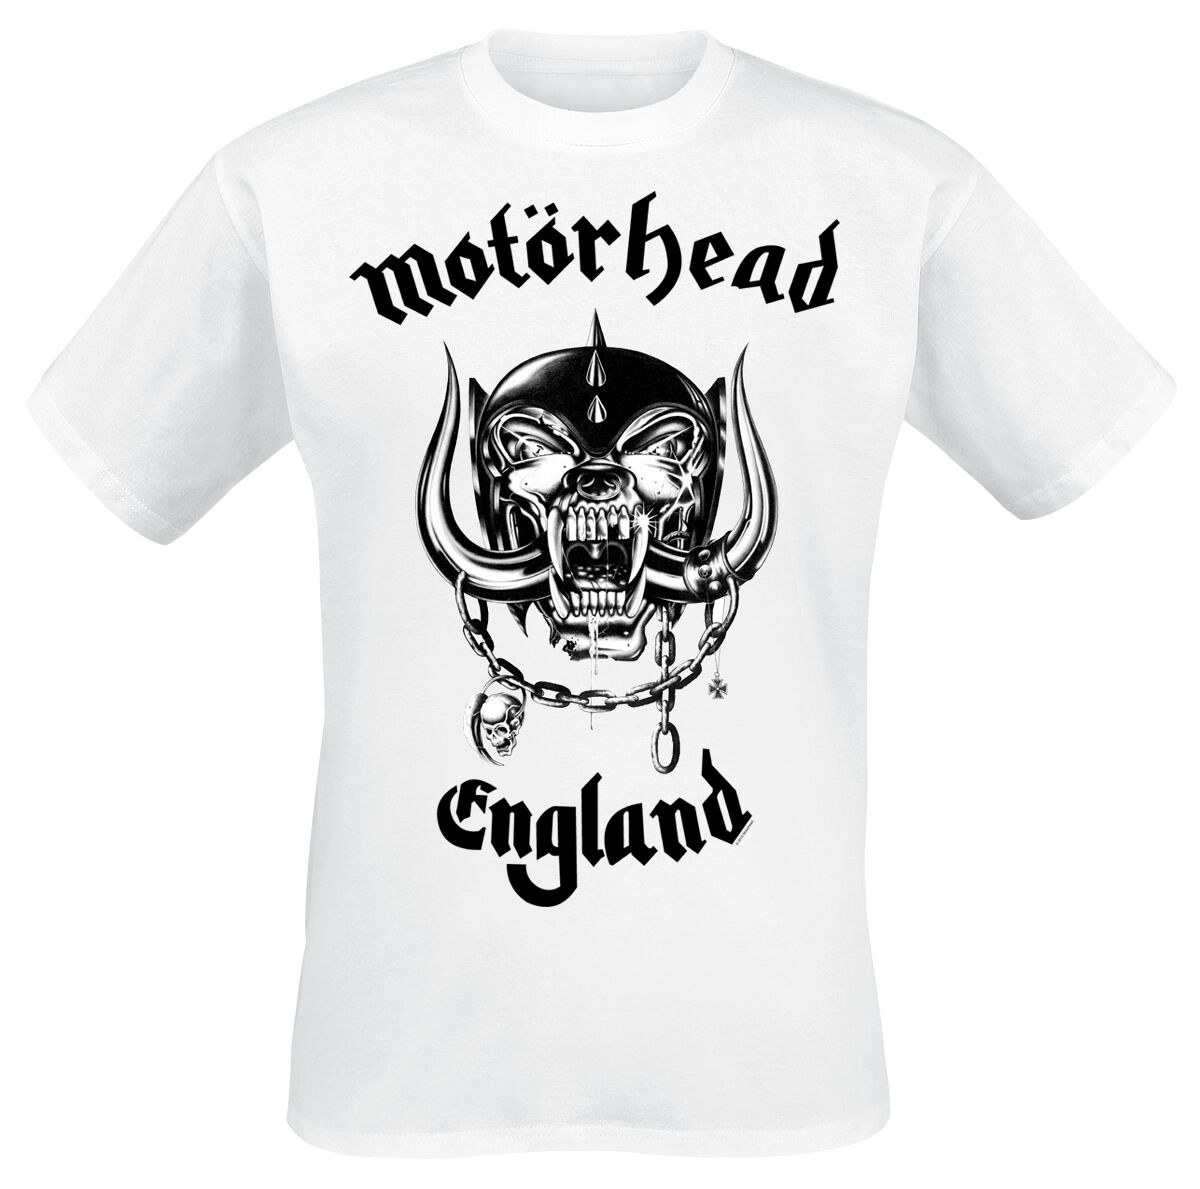 Motörhead T-Shirt - England - S bis XXL - für Männer - Größe XXL - weiß  - Lizenziertes Merchandise!